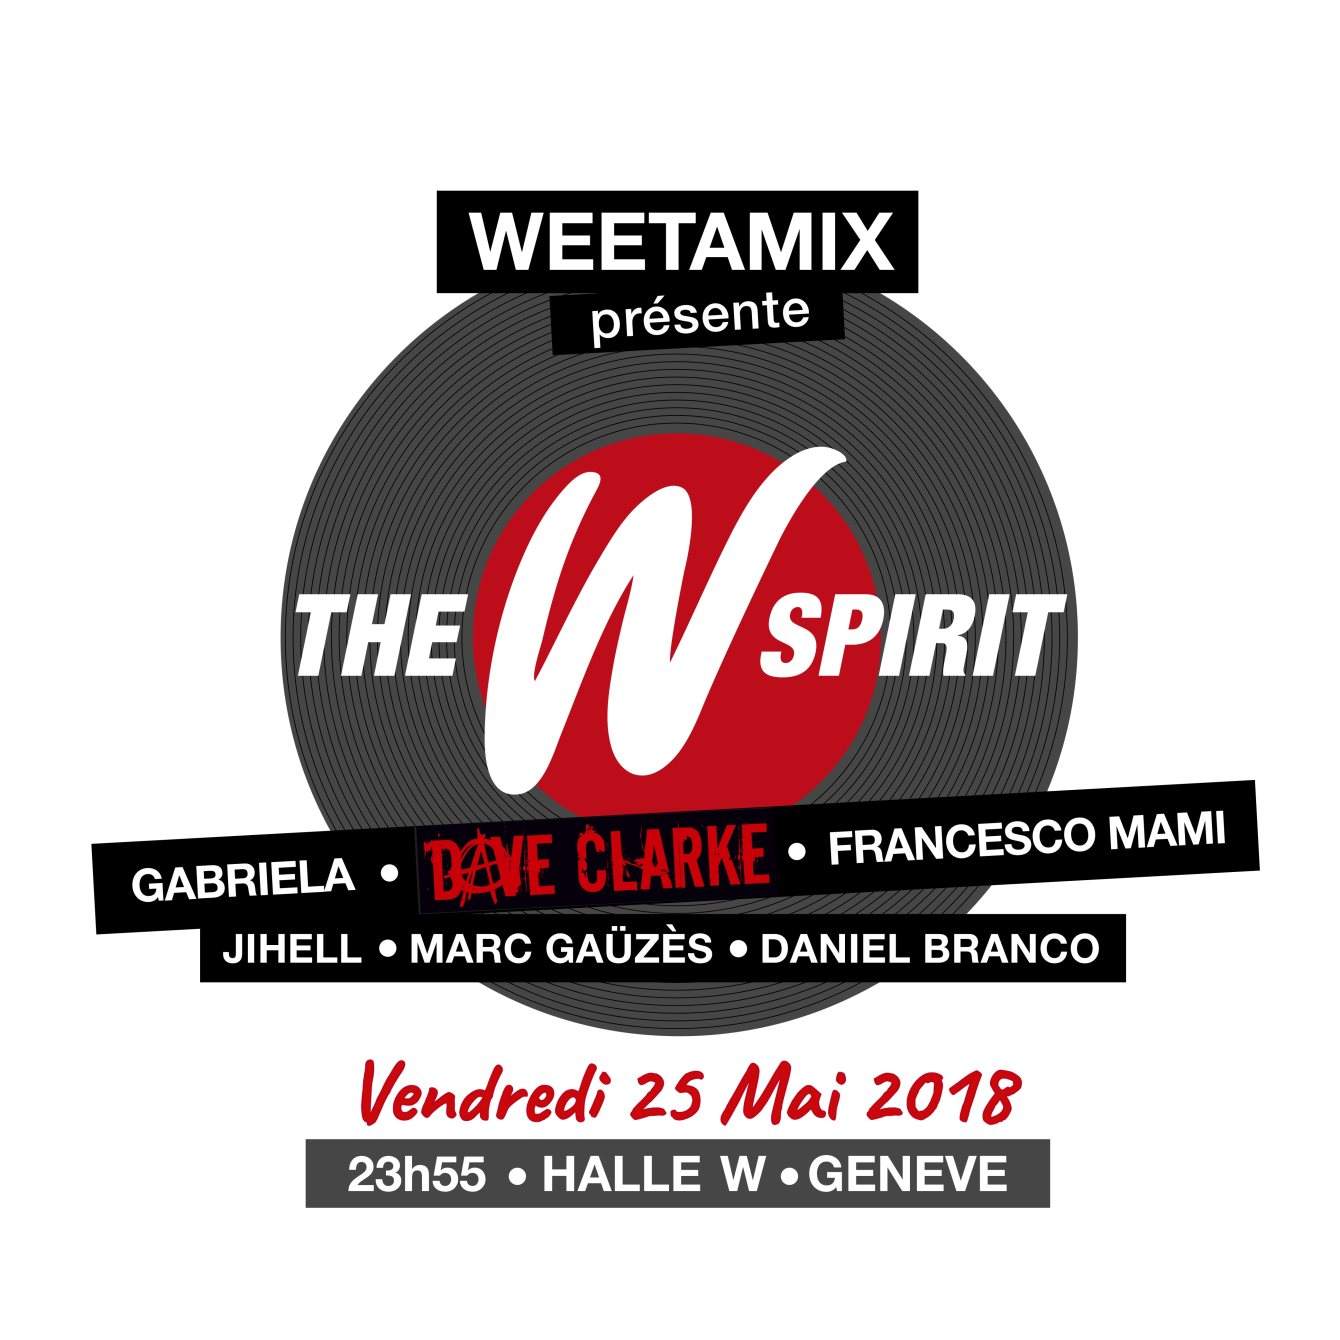 Weetamix presents: The W Spirit Part #4 with Dave Clarke - Página trasera